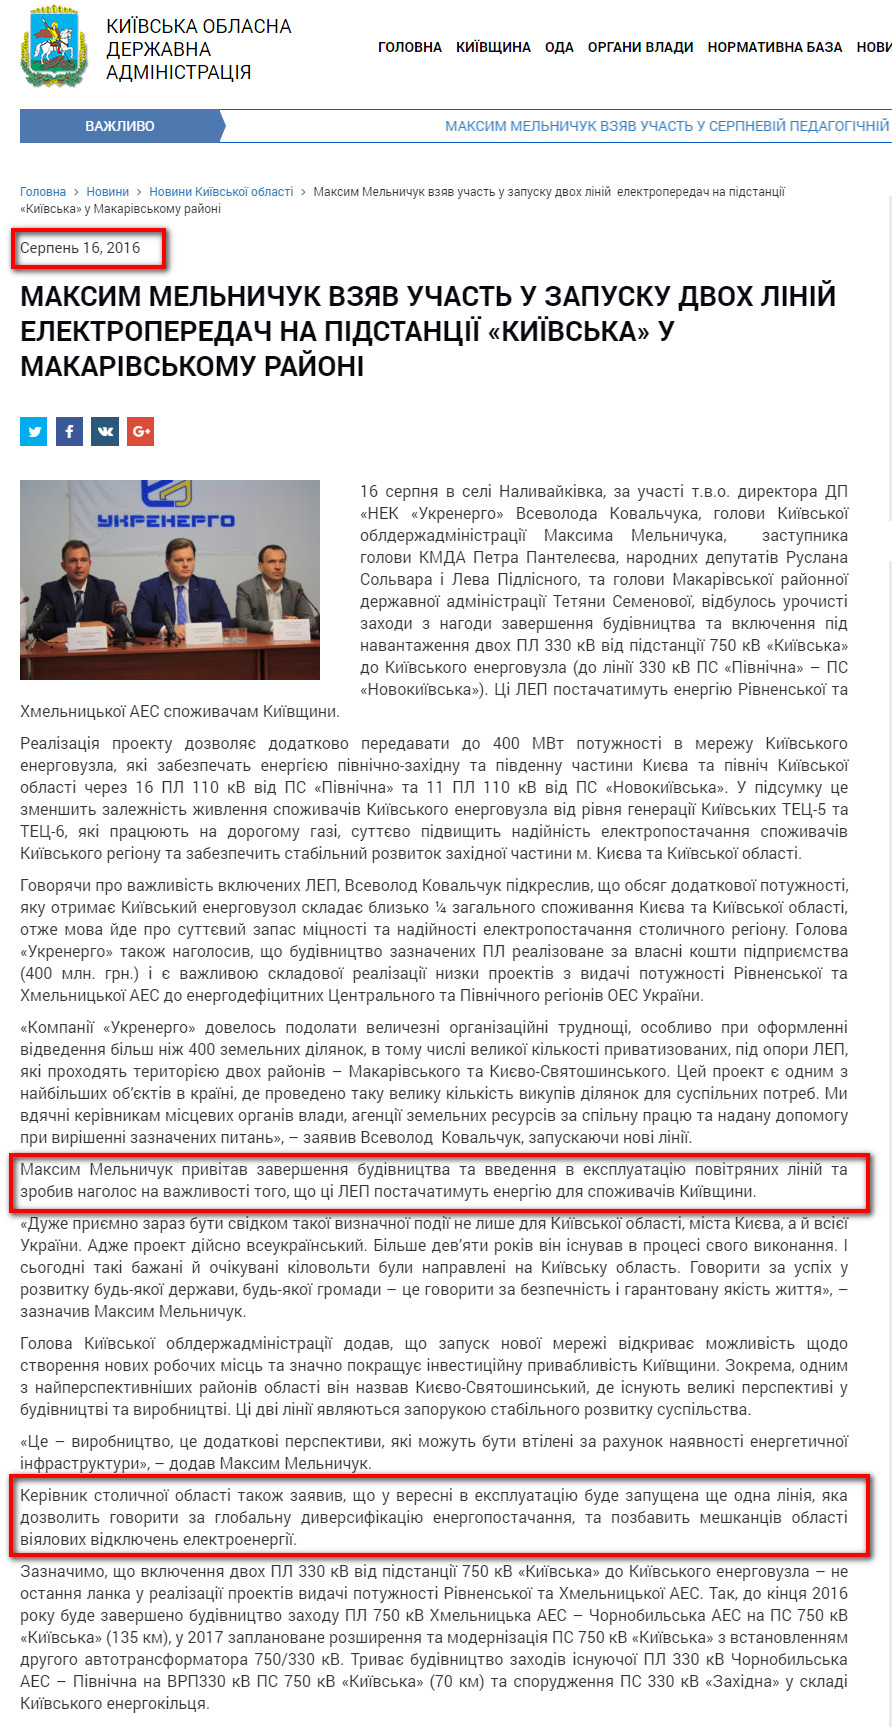 http://koda.gov.ua/news/maksim-melnichuk-vzyav-uchast-u-zapusk/